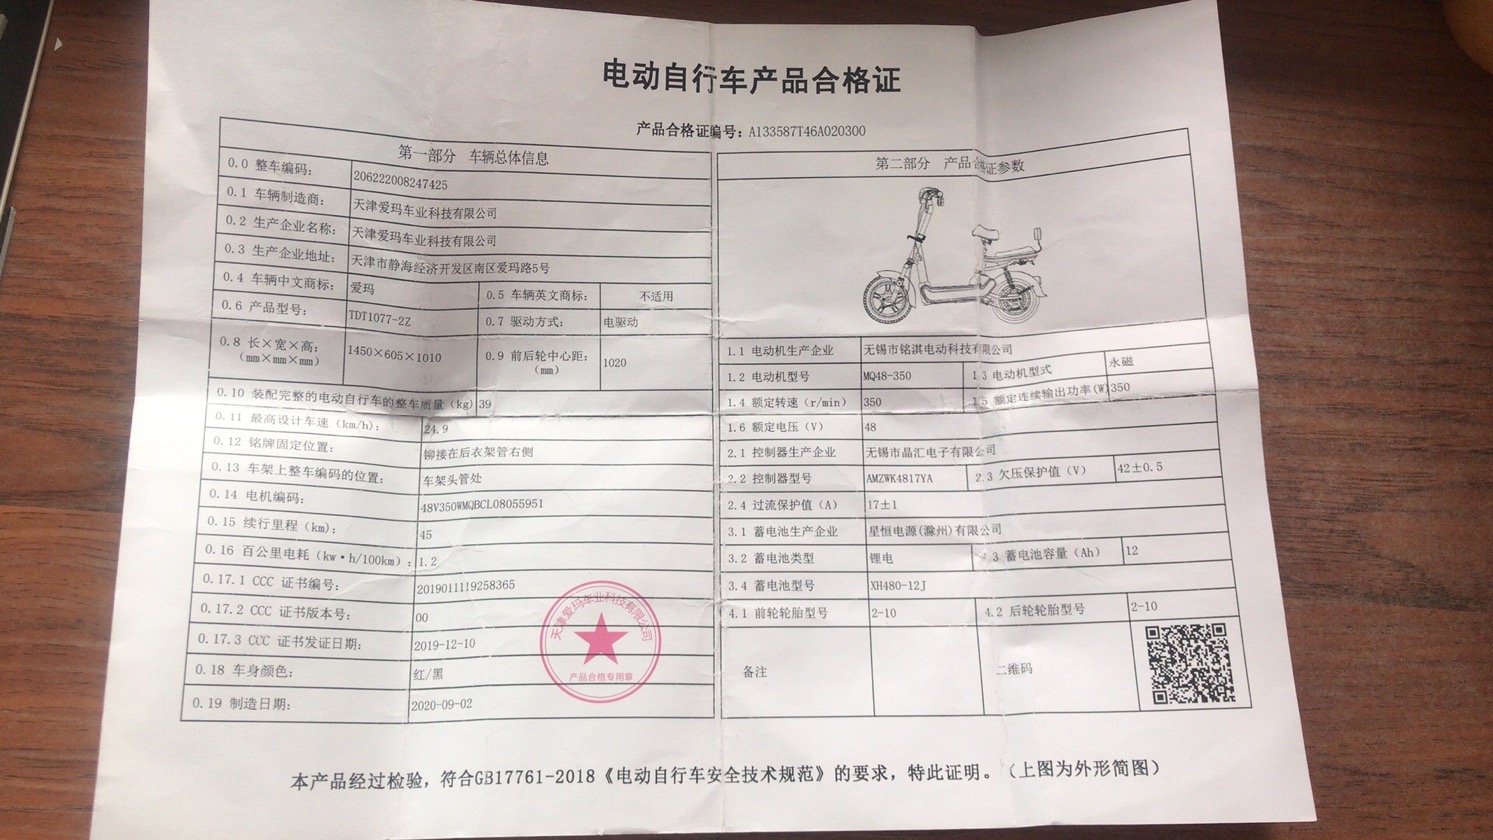 天津市民遭遇爱玛电动车突然自行停车险酿车祸,说好的